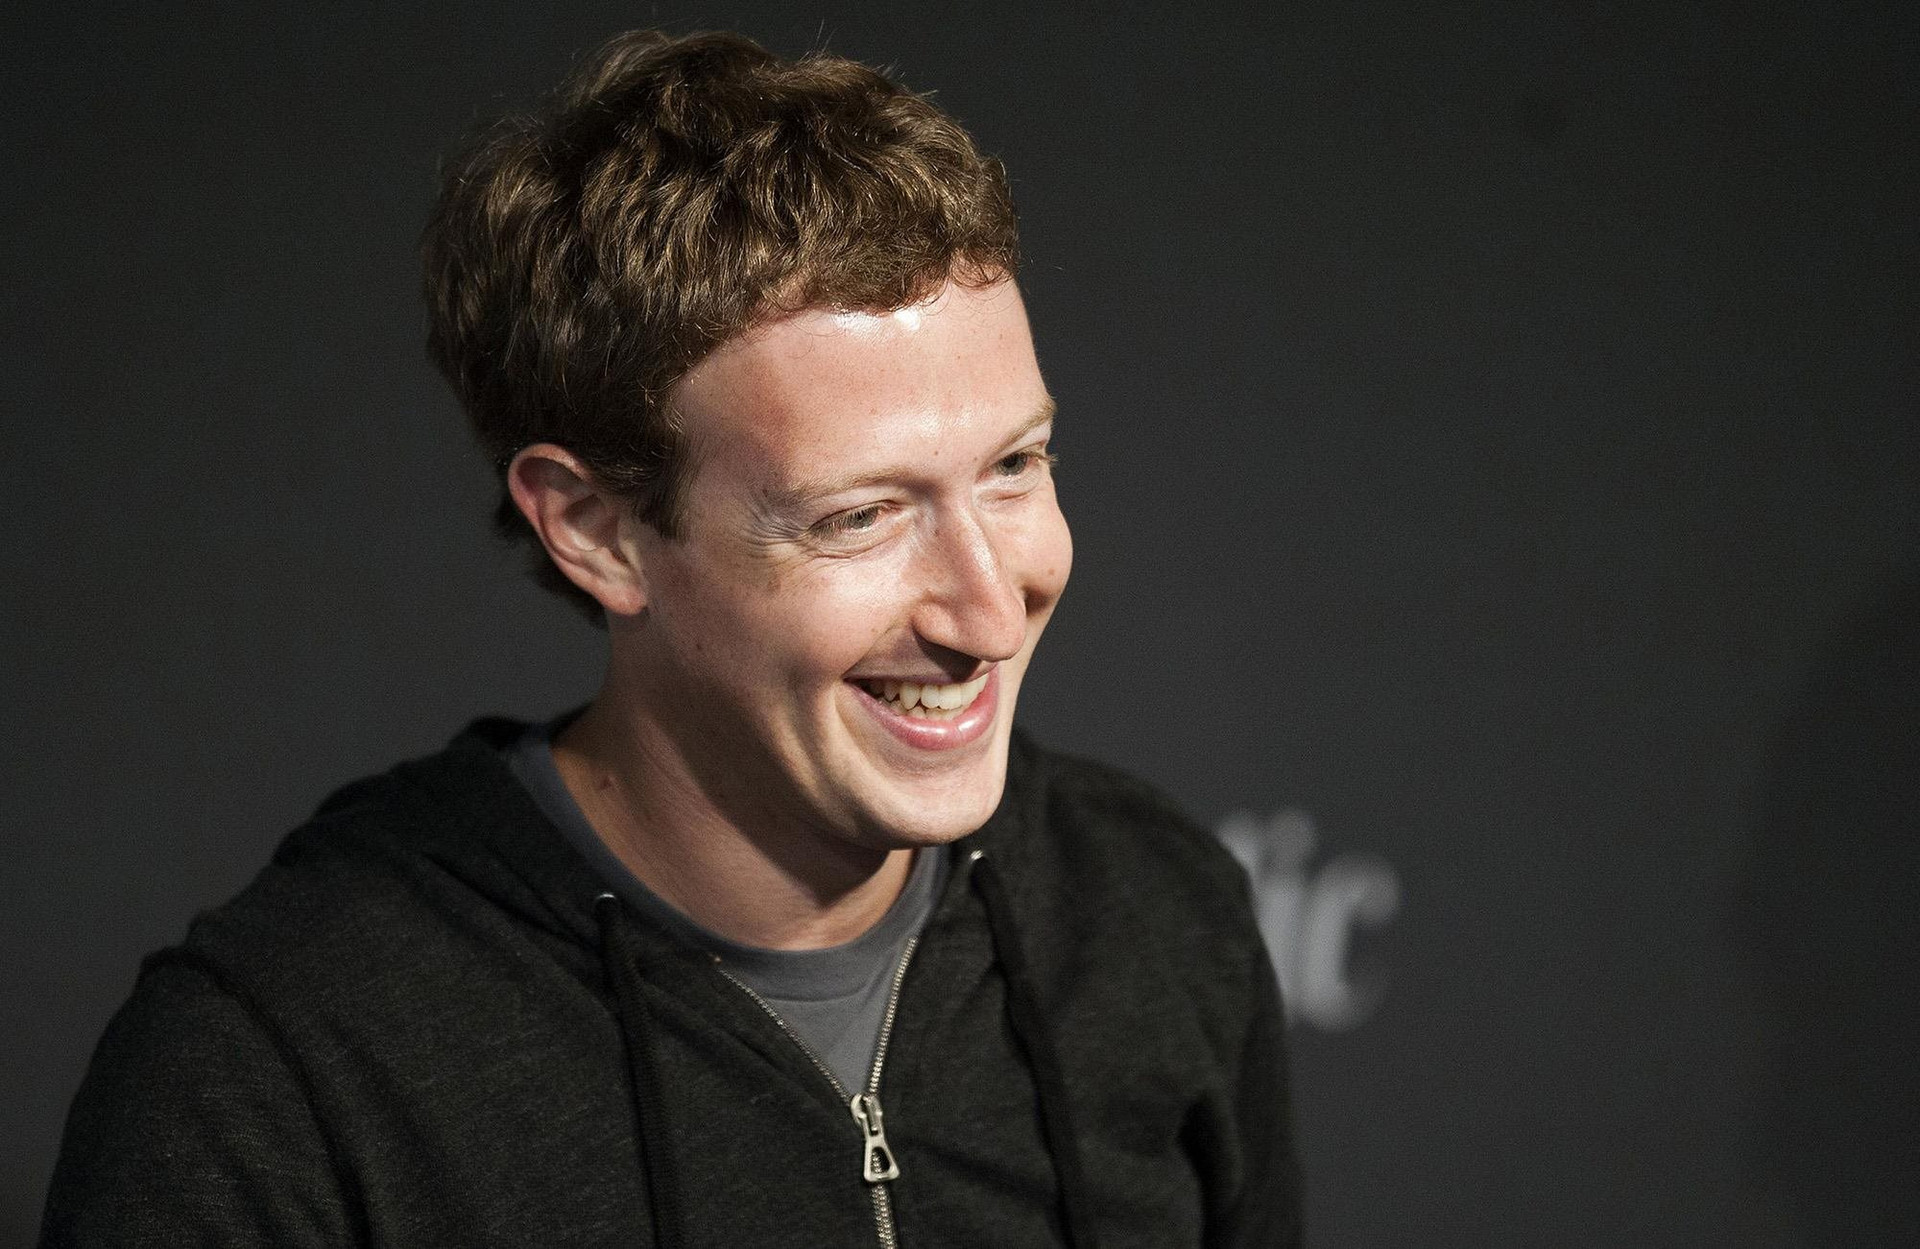 Hào quang quay trở lại với Mark Zuckerberg: Sau 1 năm lao xuống vực, doanh thu Meta lần dầu tiên tăng, 'khoe' có 2,04 tỷ người dùng Facebook mỗi ngày - Ảnh 1.